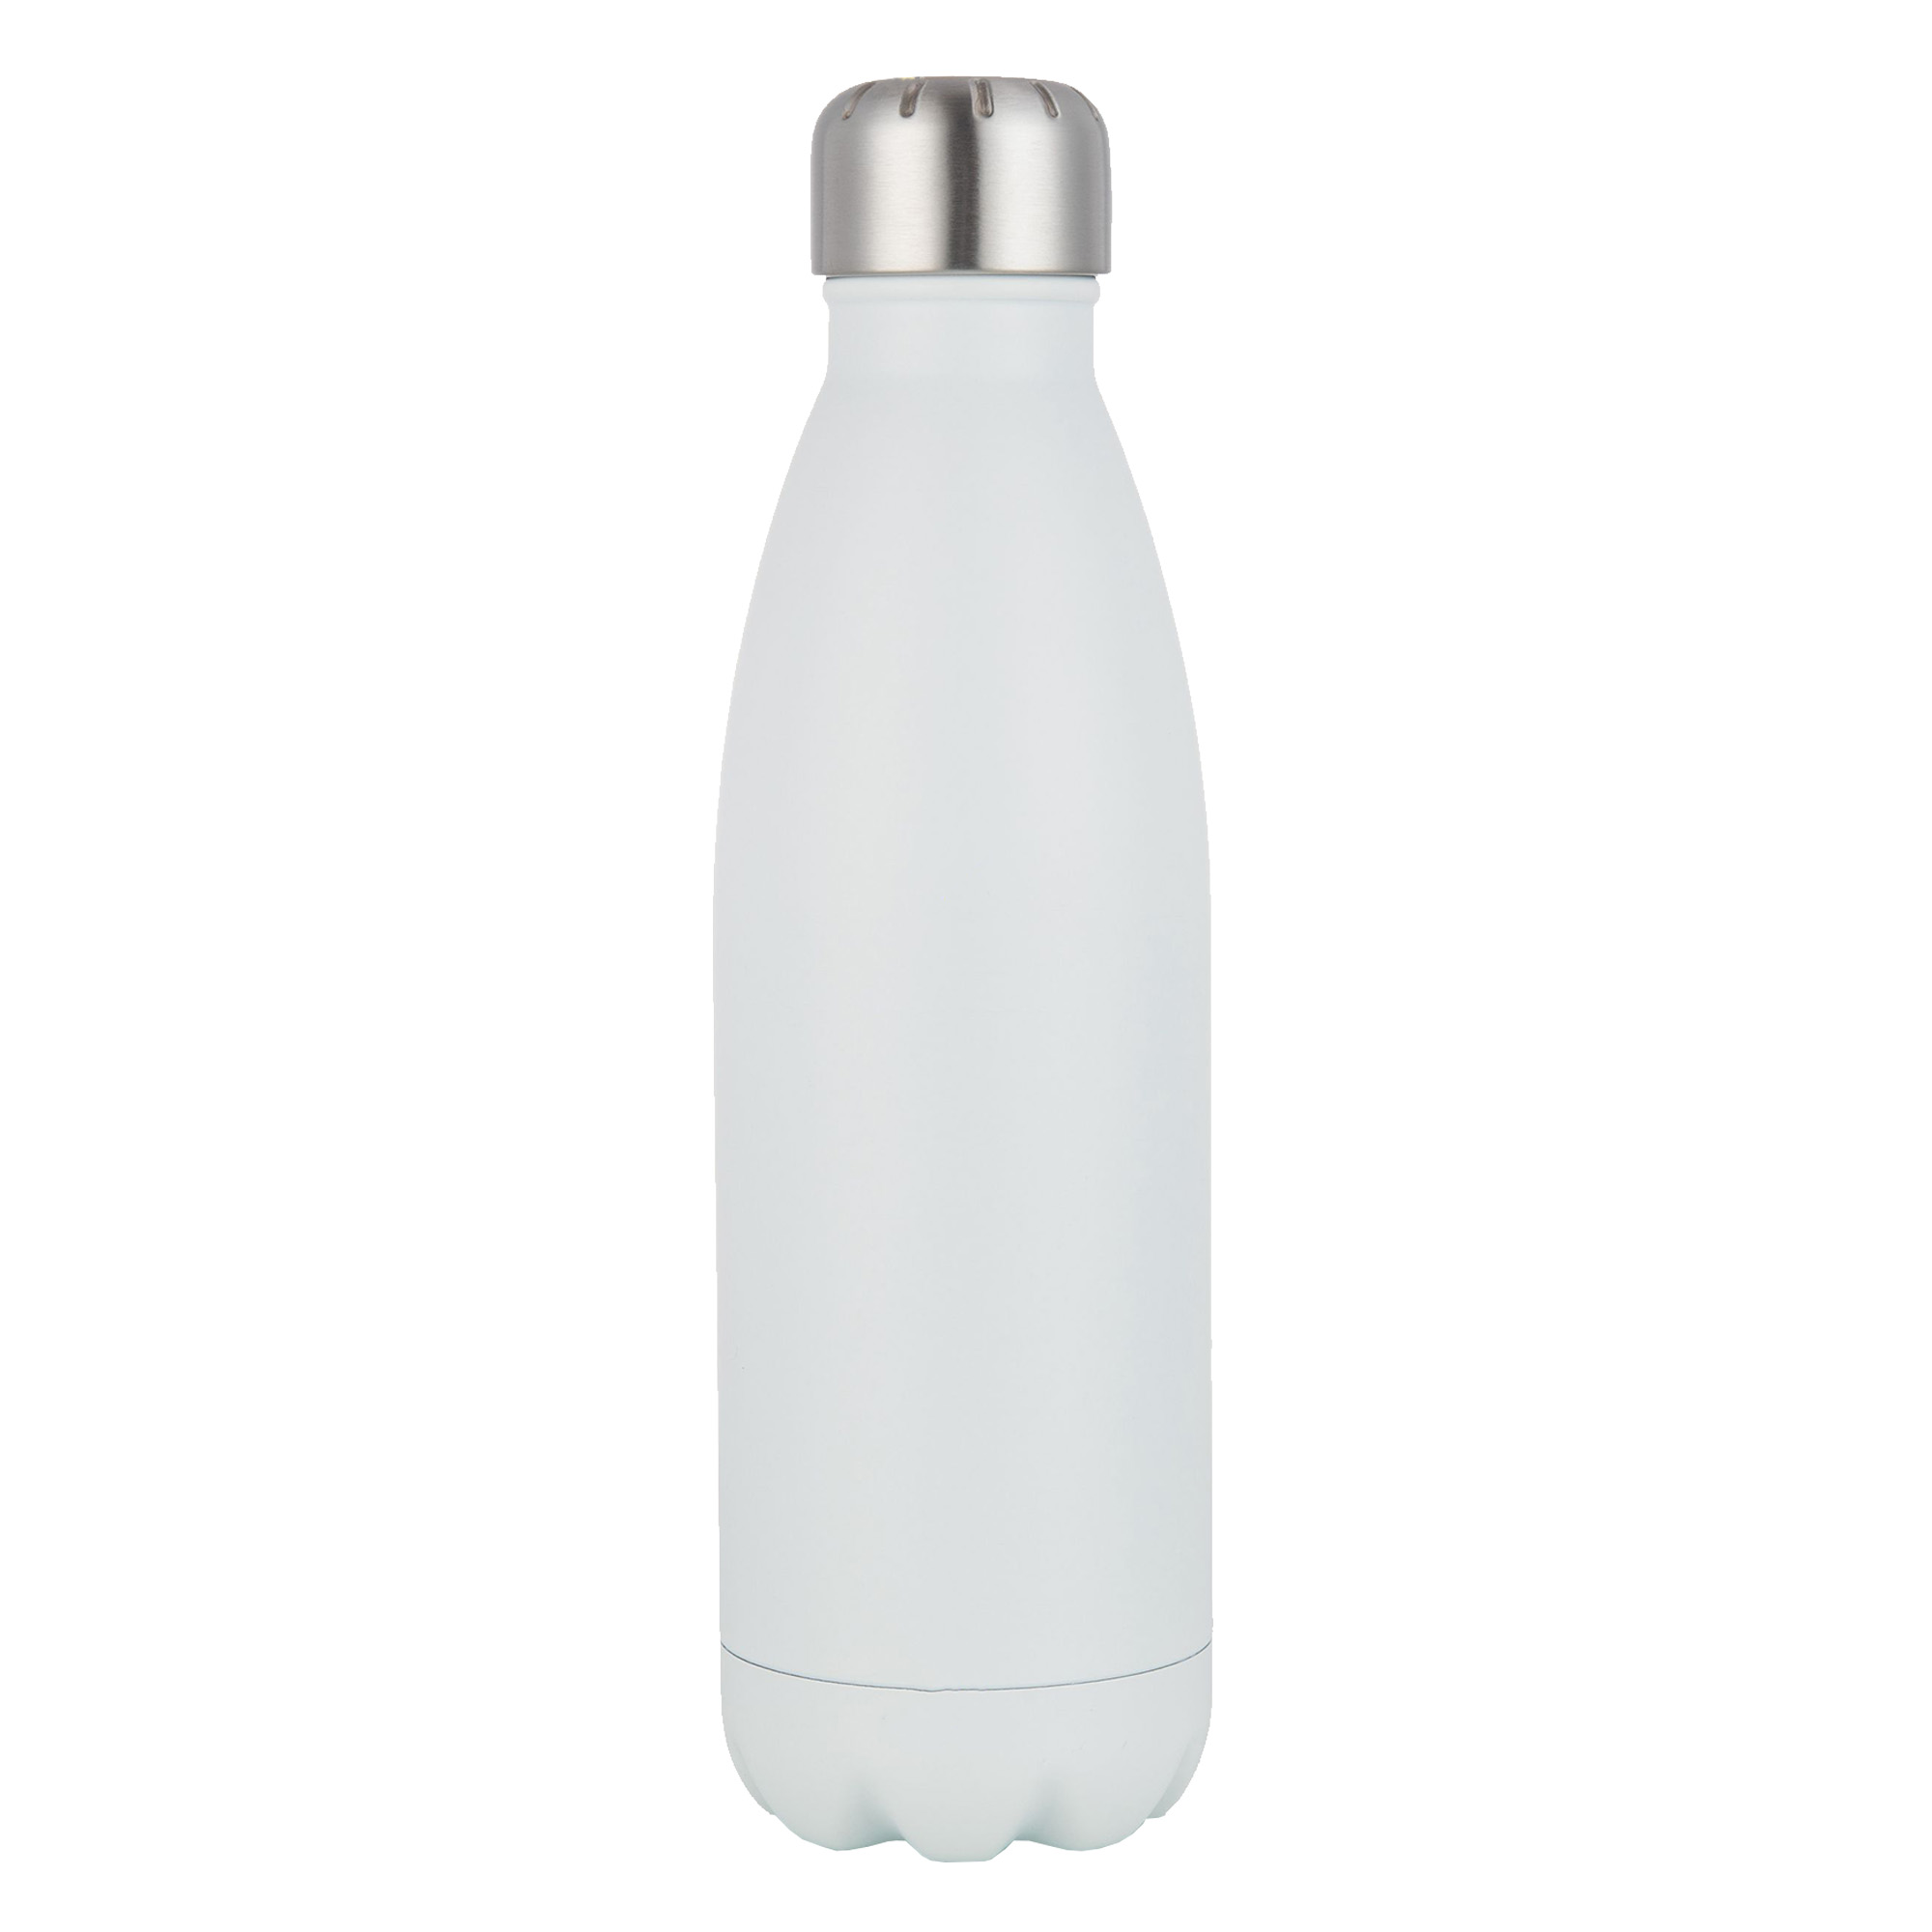 Bulk Custom Komo Matt Metal White Drink Bottle Online in Perth Australia